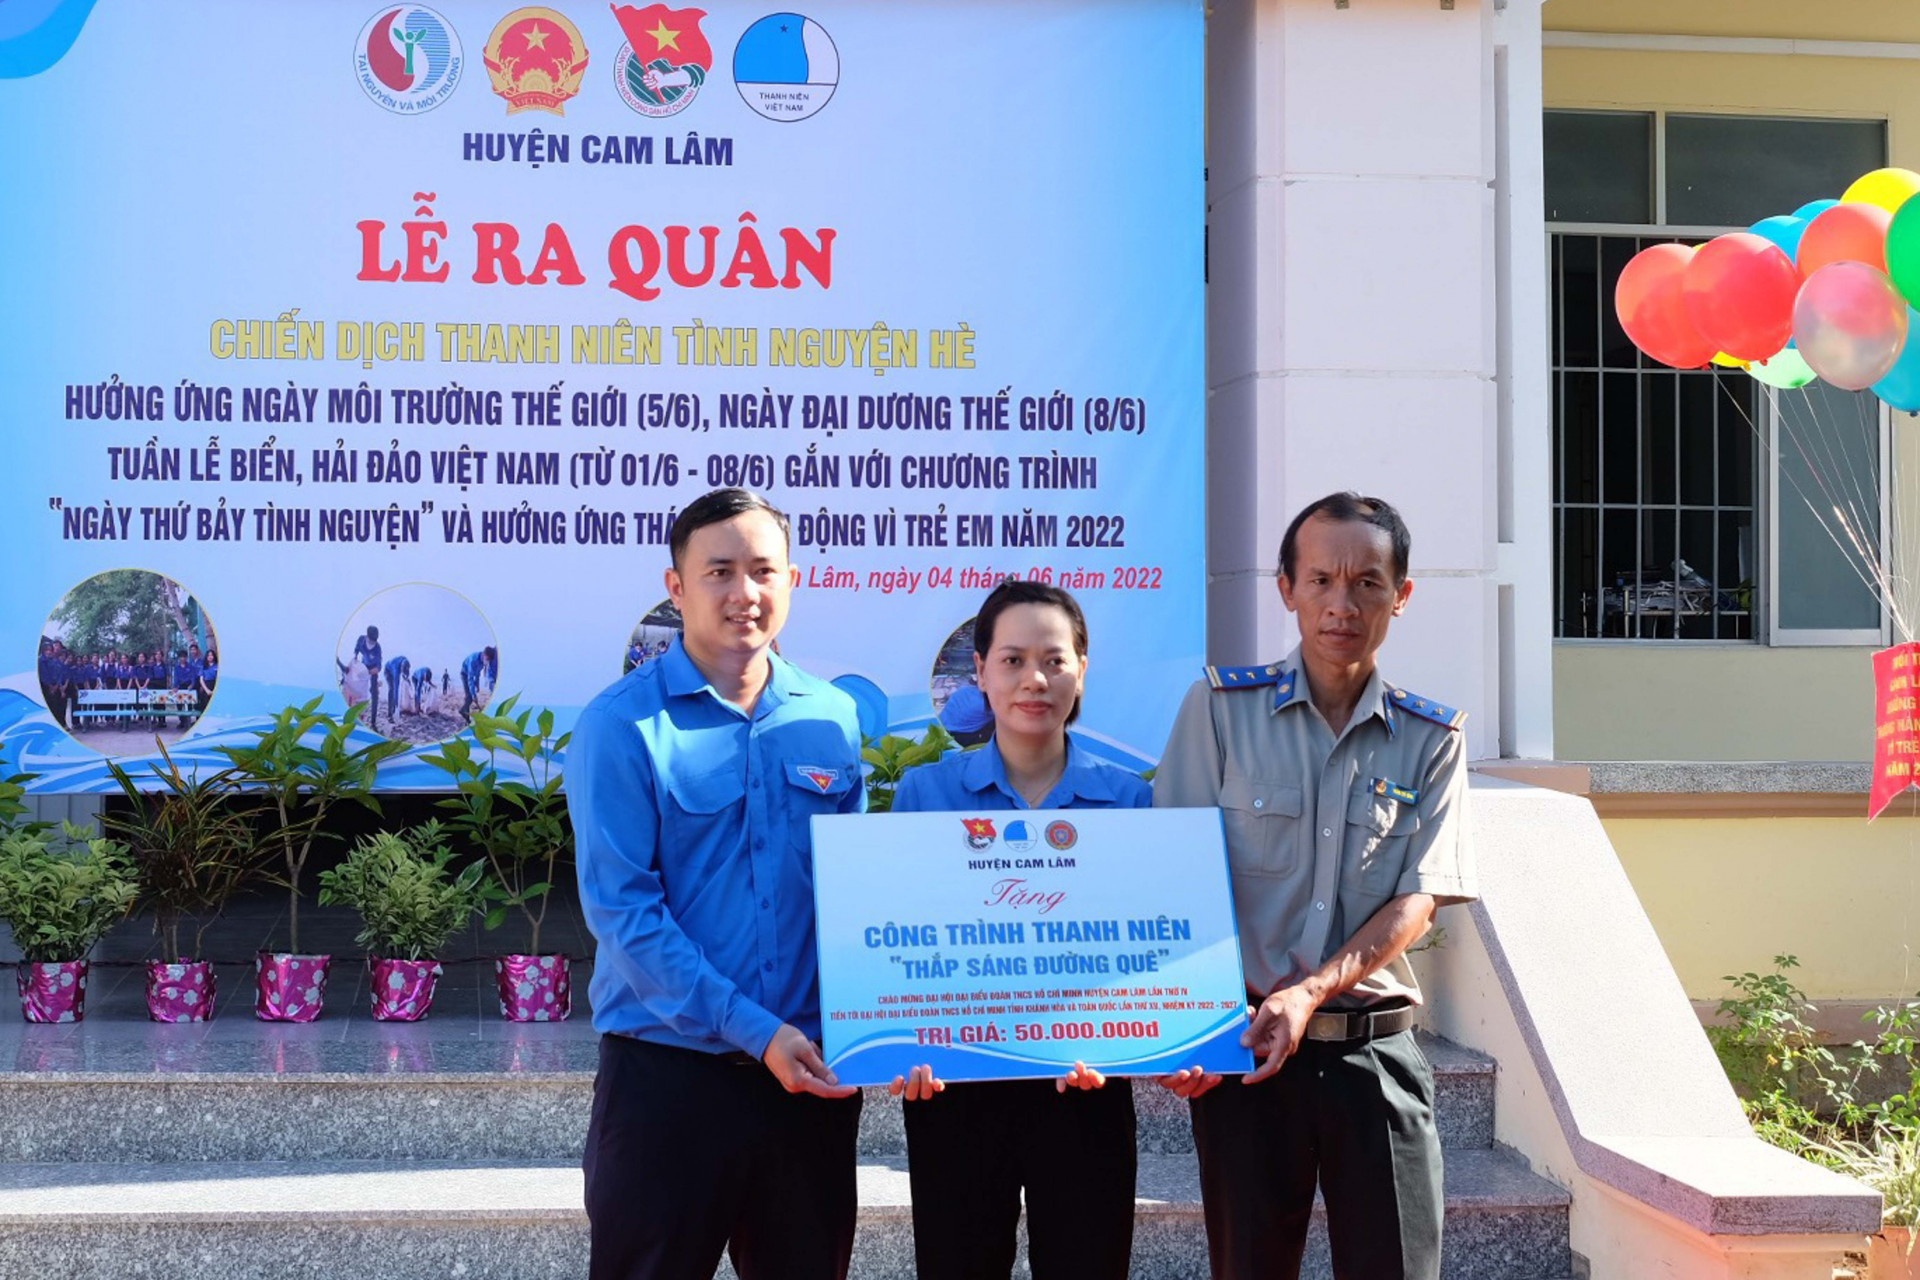 Huyện đoàn Cam Lâm trao biểu trưng công trình thanh niên Thắp sáng đường quê cho đại diện xã Cam Hải Tây